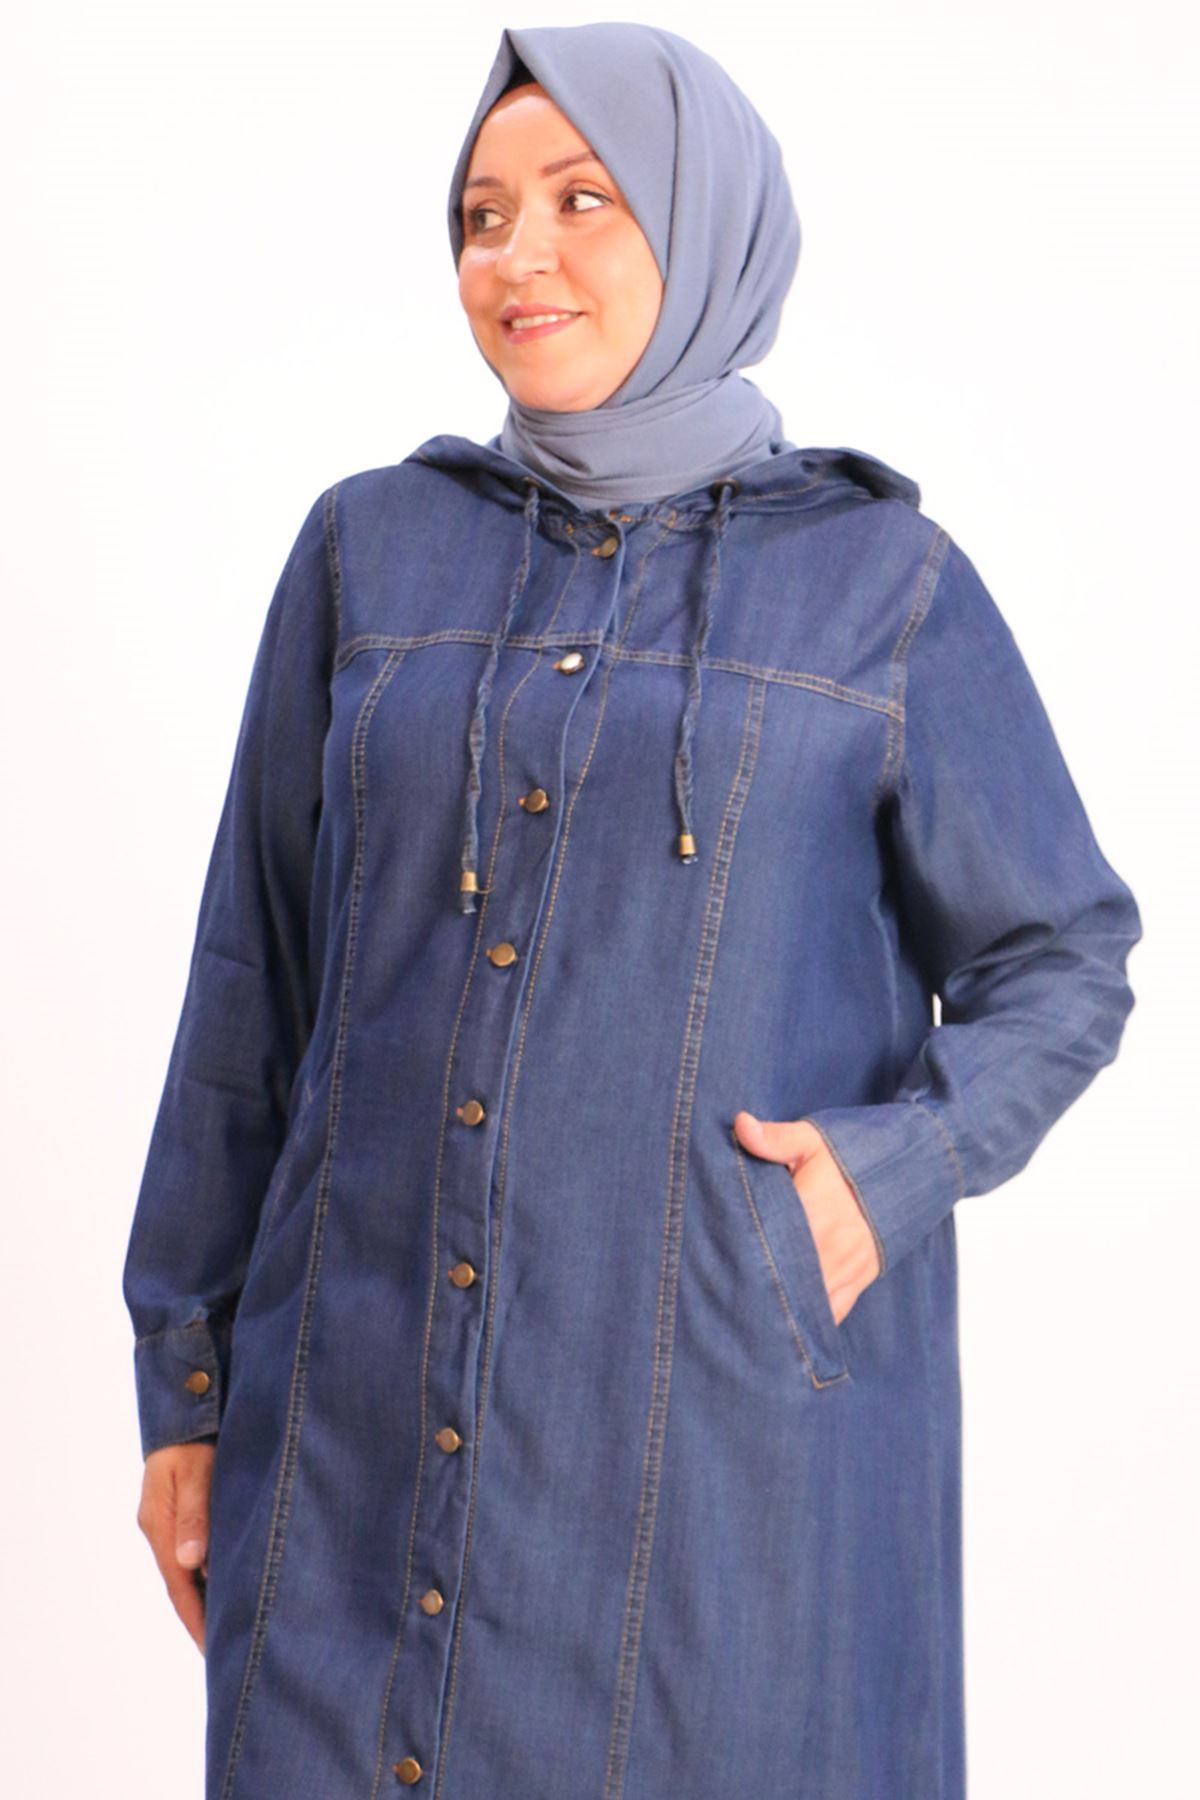 maternity dress hijab